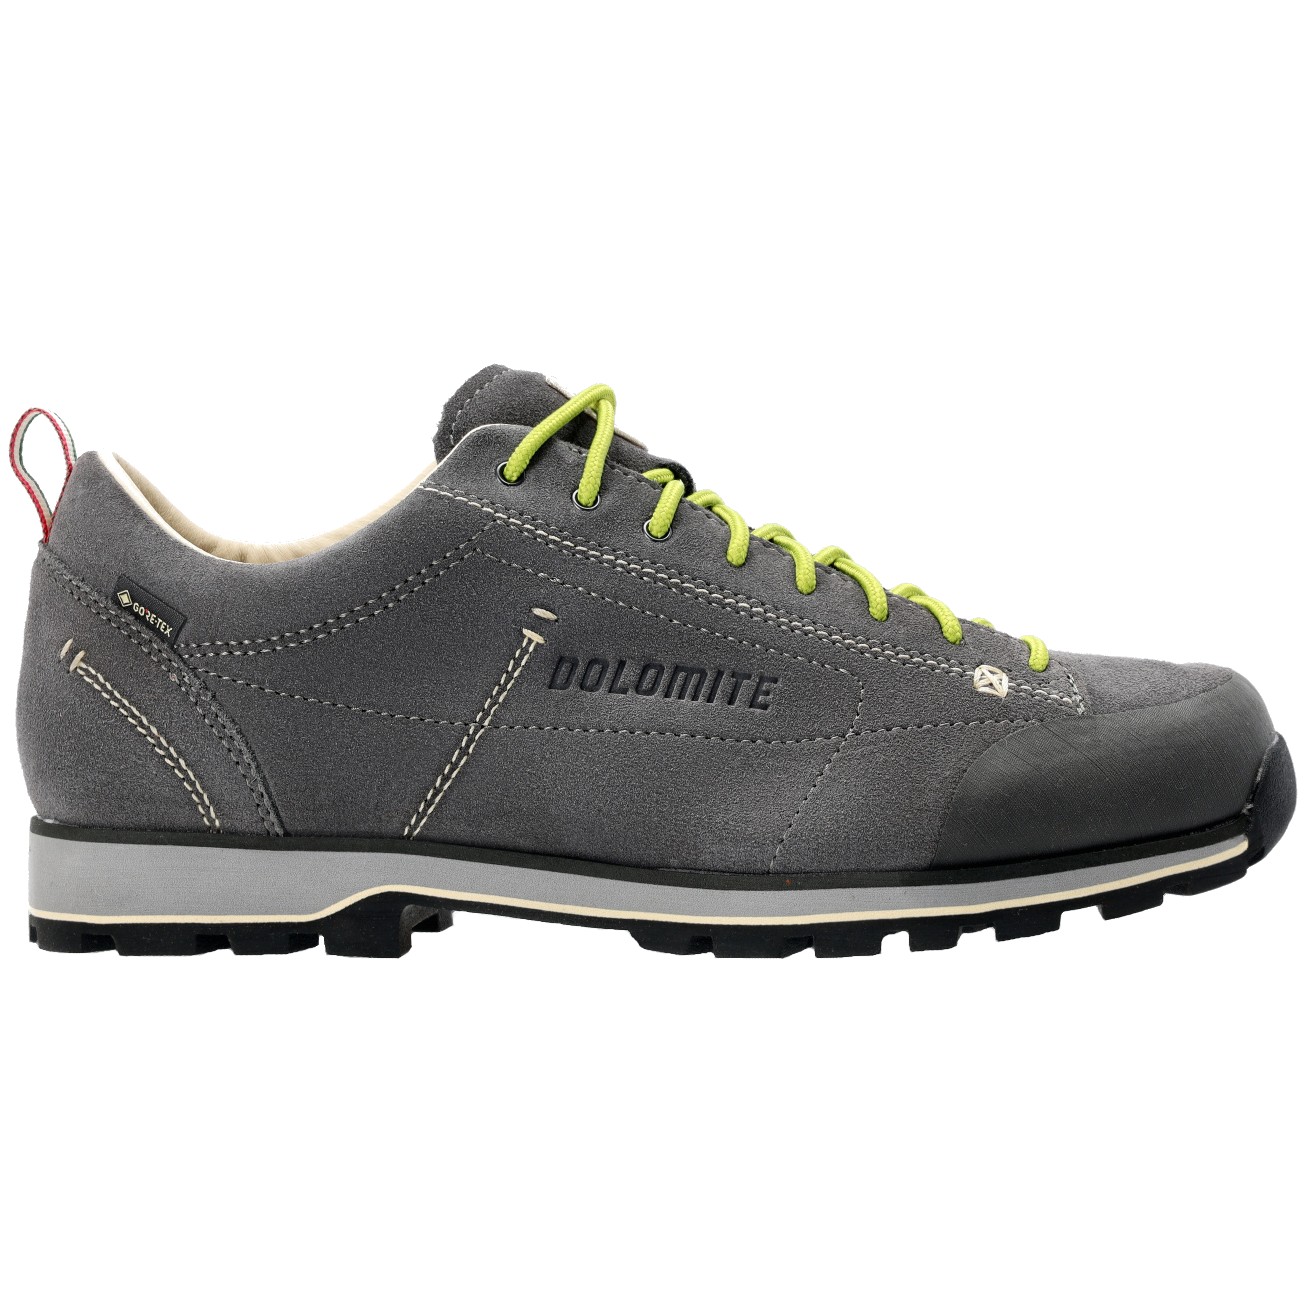 Dolomite 54 Low GTX Hiking/Walking Shoes